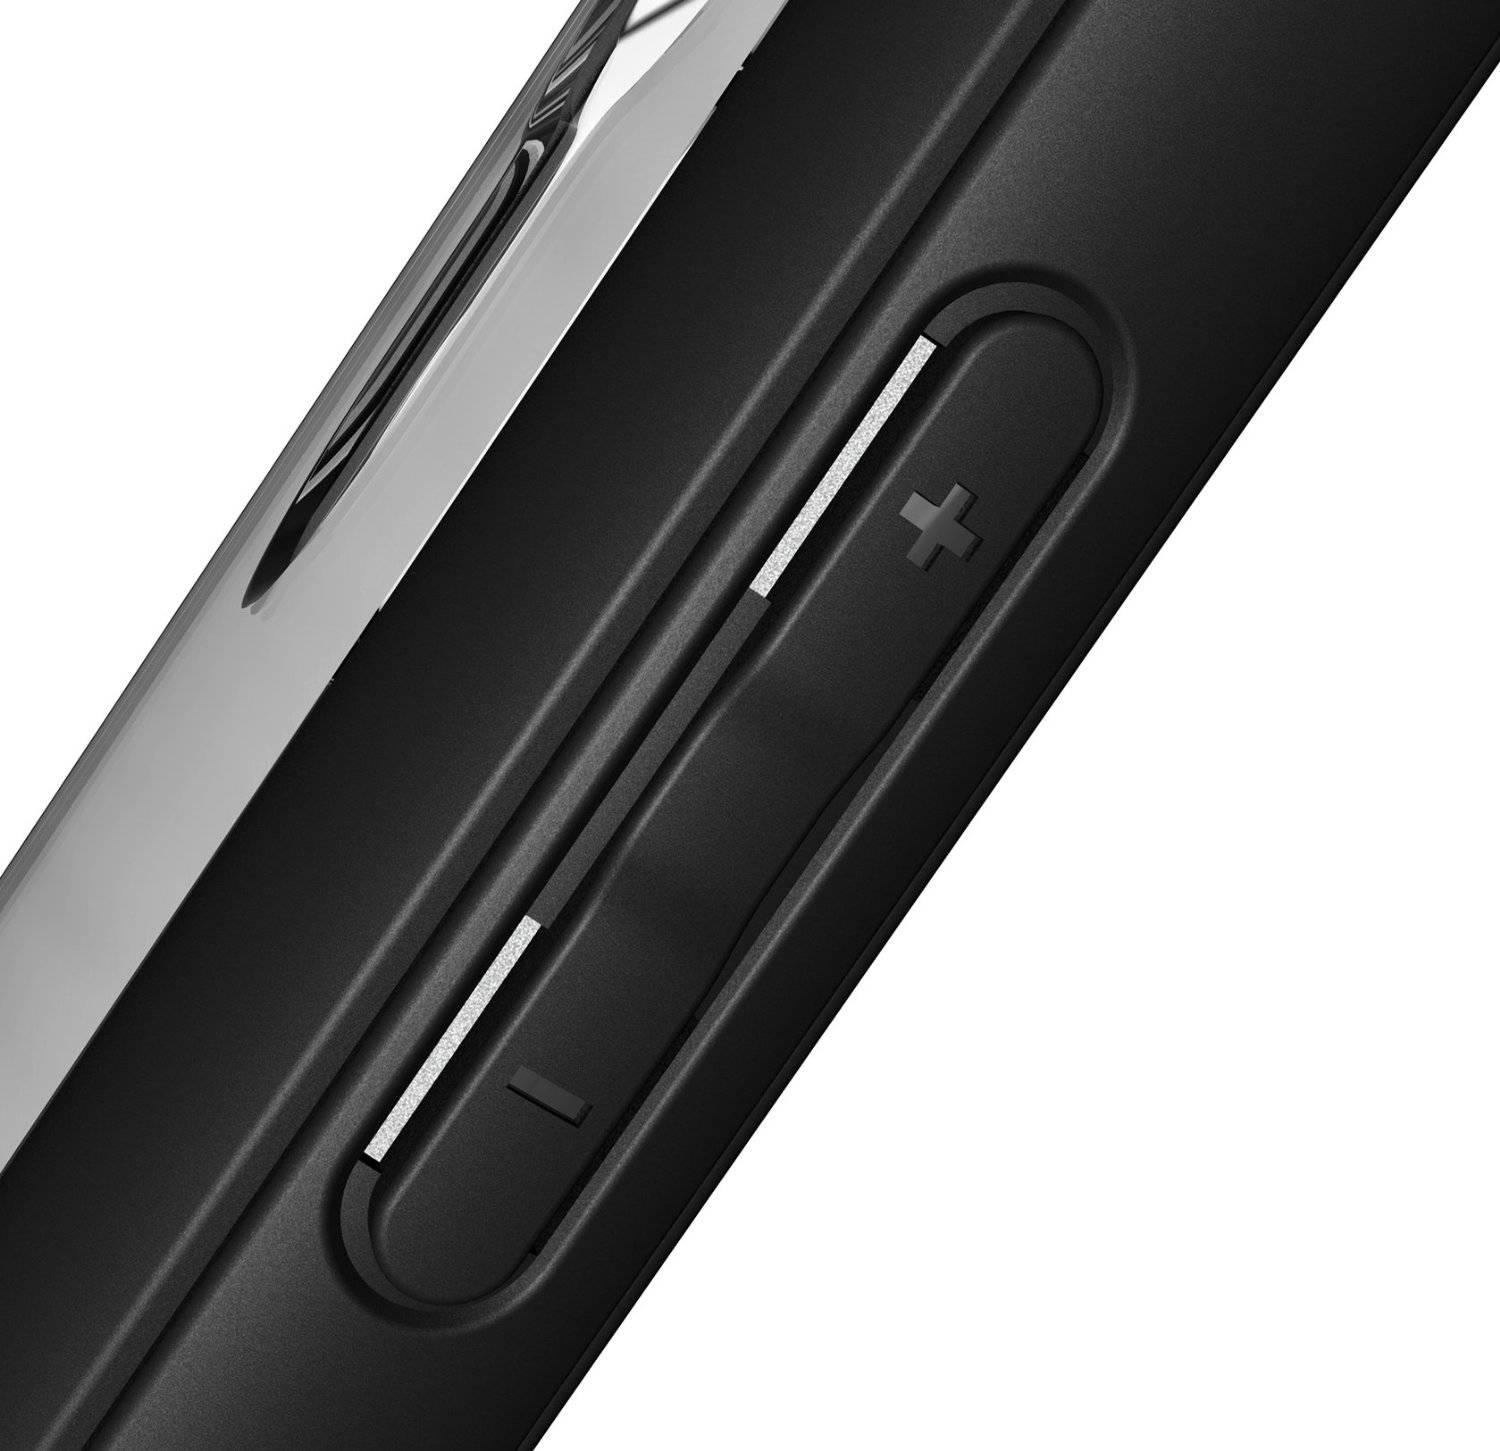 Dari case ini, Anda bisa bayangkan desain LG G5